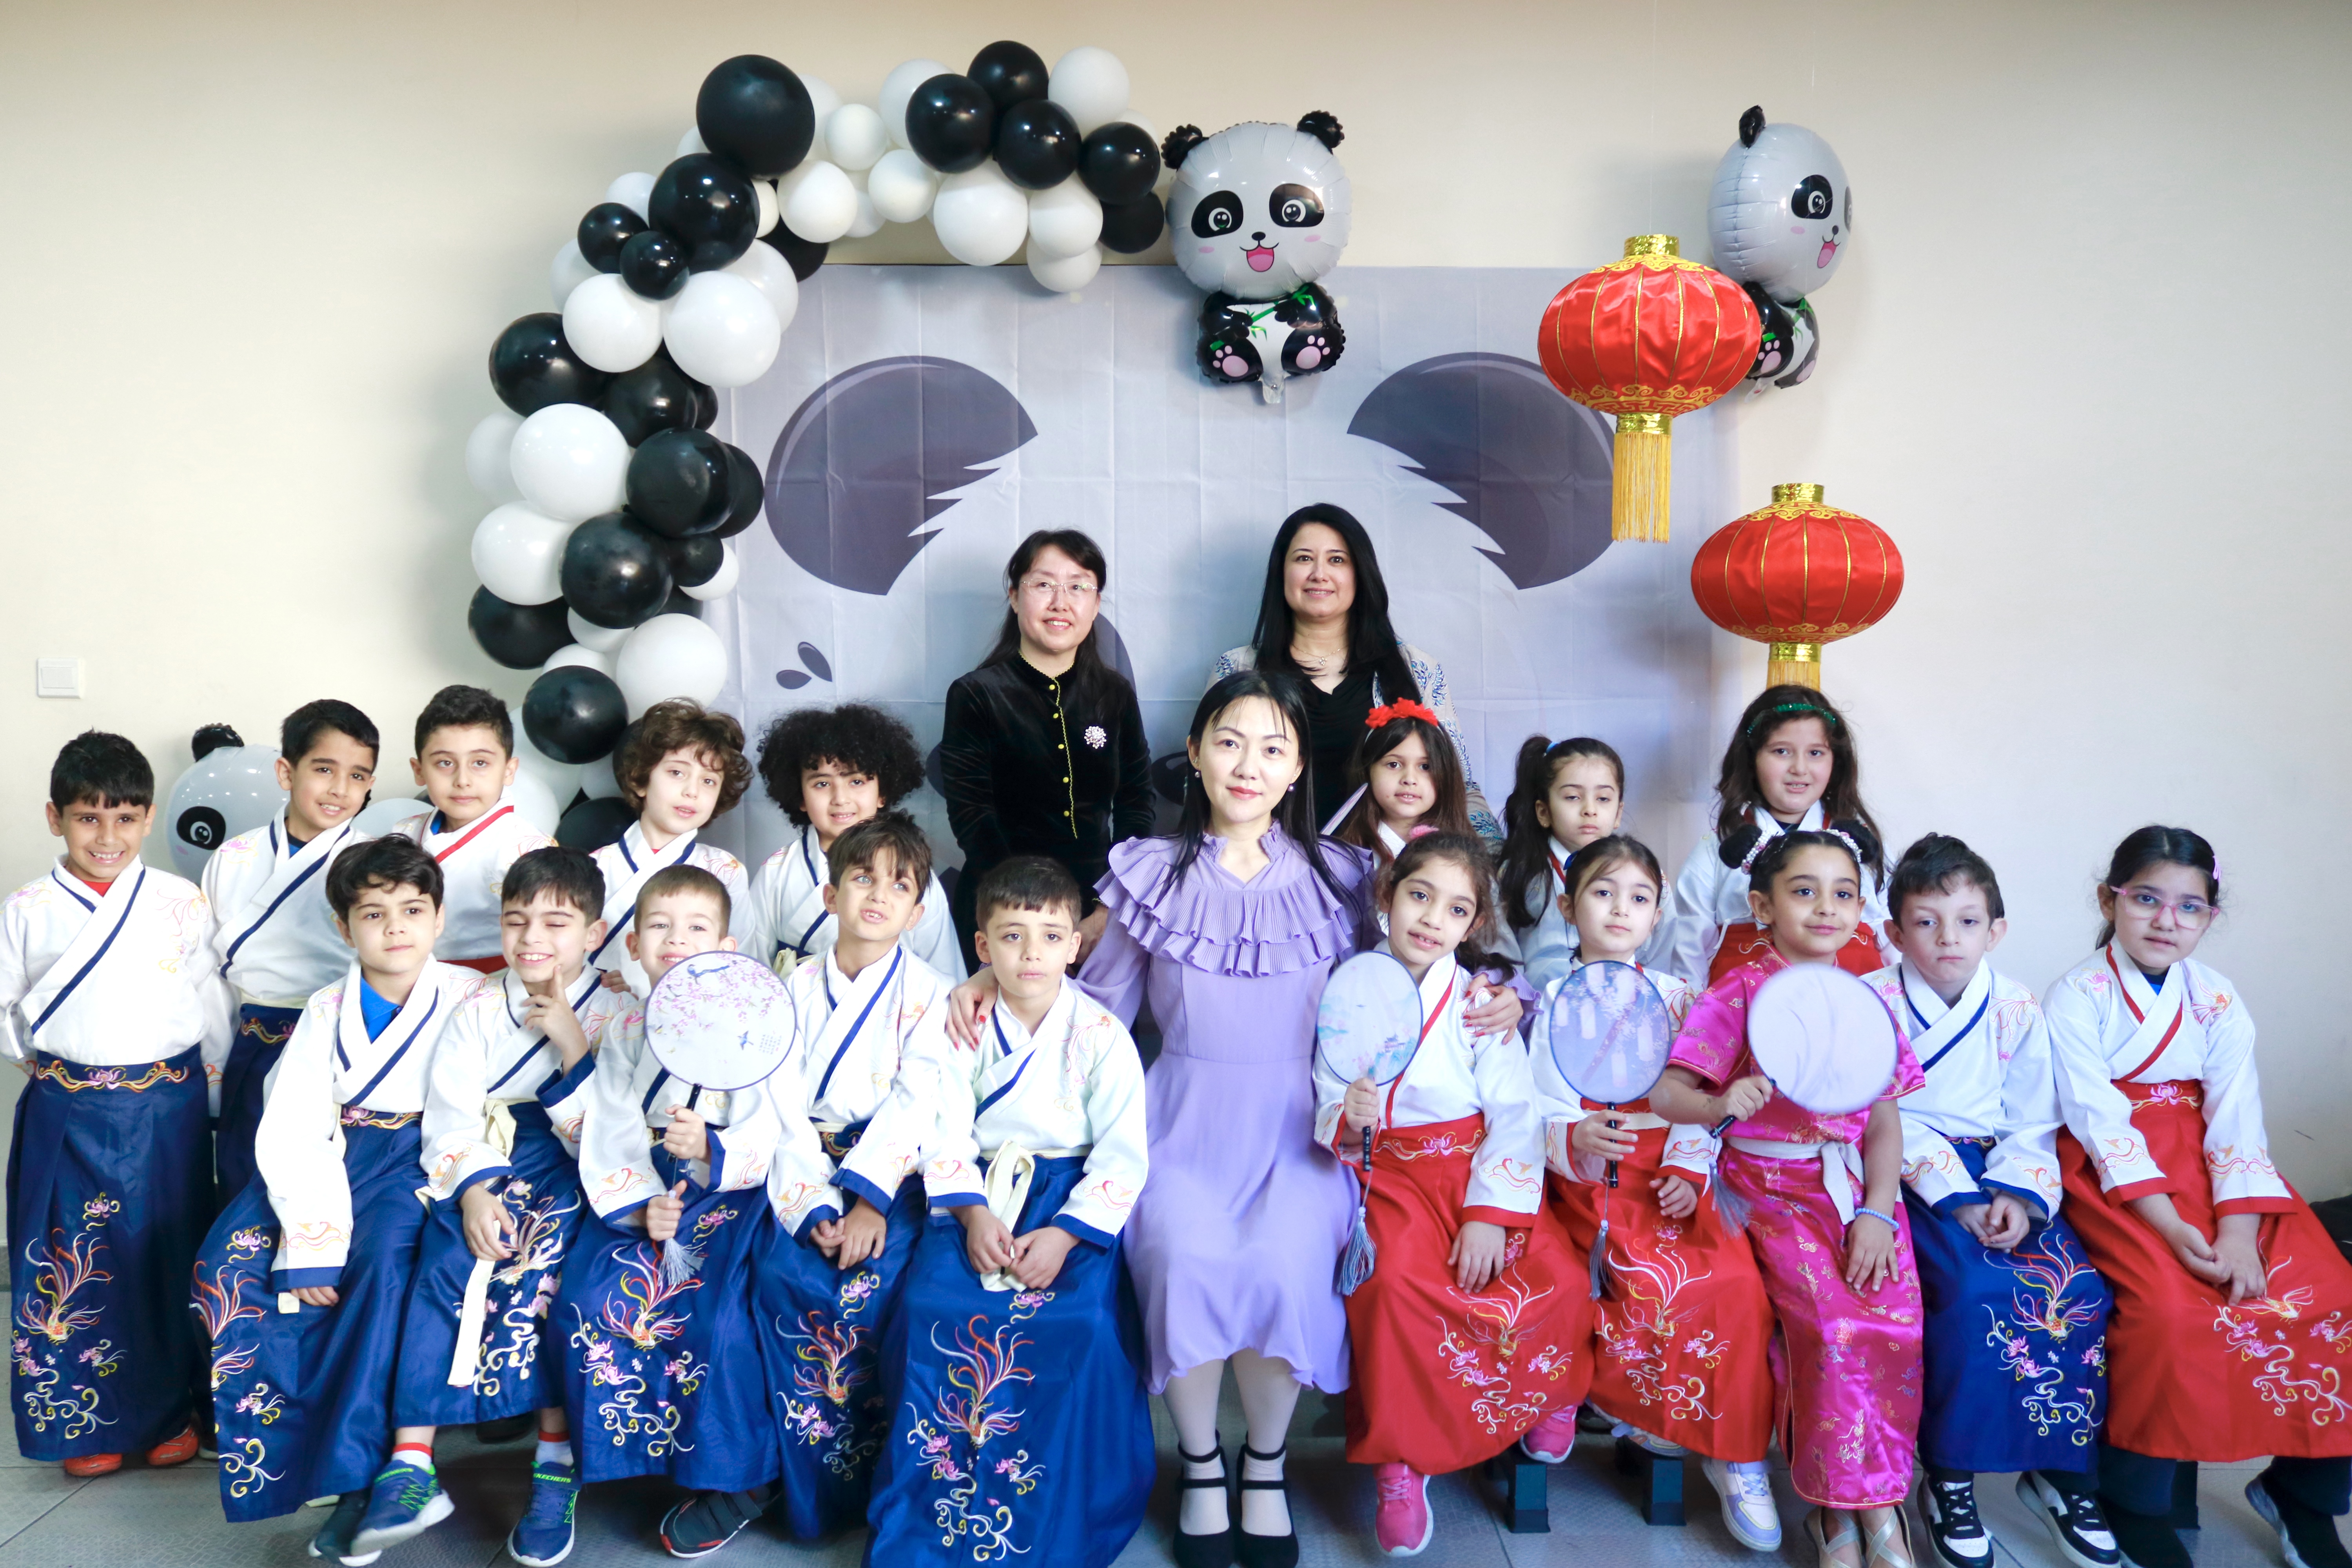 معهد كونفوشيوس/ جامعة فيلادلفيا ينظّم يومًا ثقافيًا صينيًا في مدارس الشوف الدولية